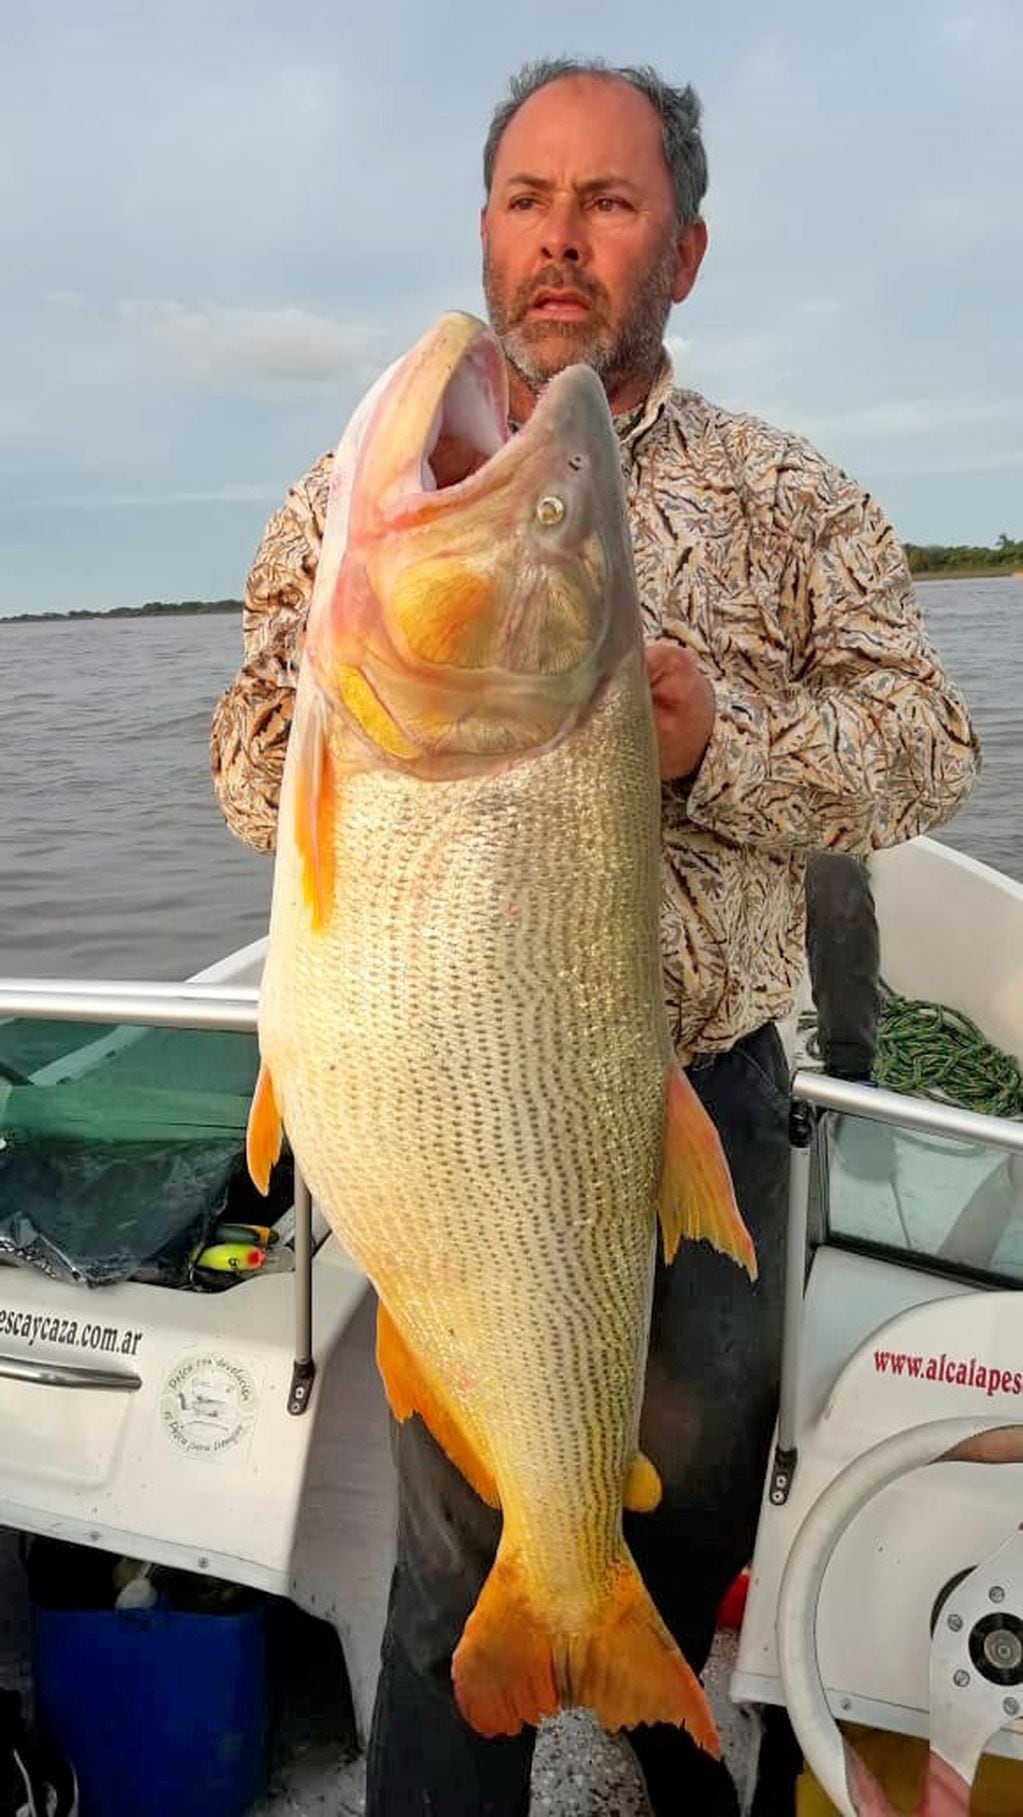 Miguel Rovera, de Alcira Gigena, pescó este dorado de 25 kilos en las aguas del Paraná. (Puntal.com)